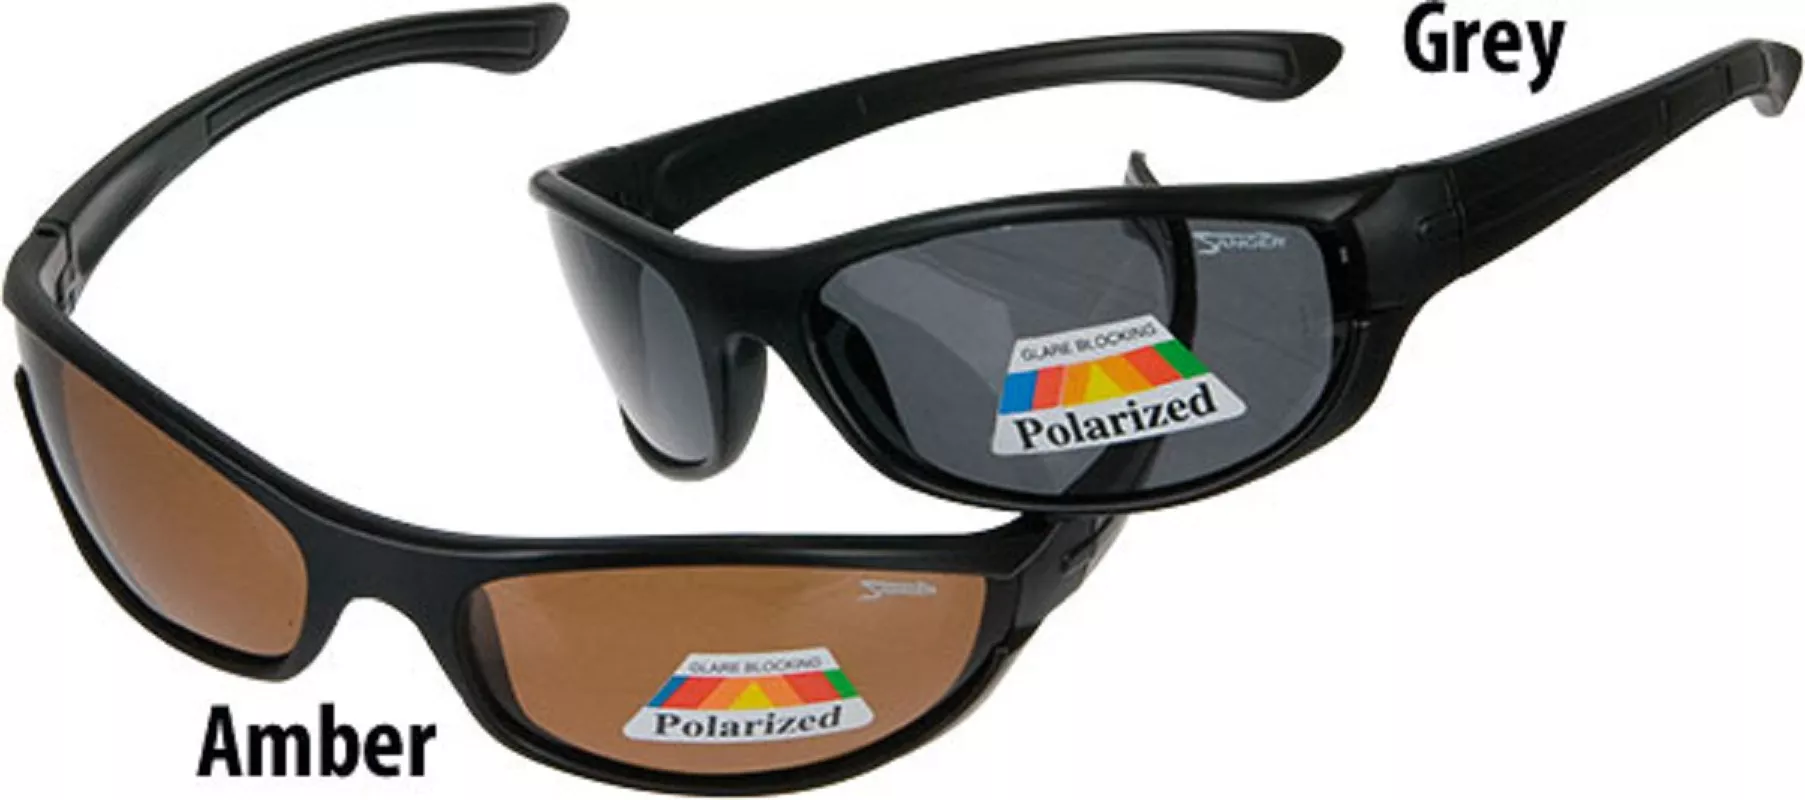 SÄNGER Specitec Pol-Glasses 4 grey